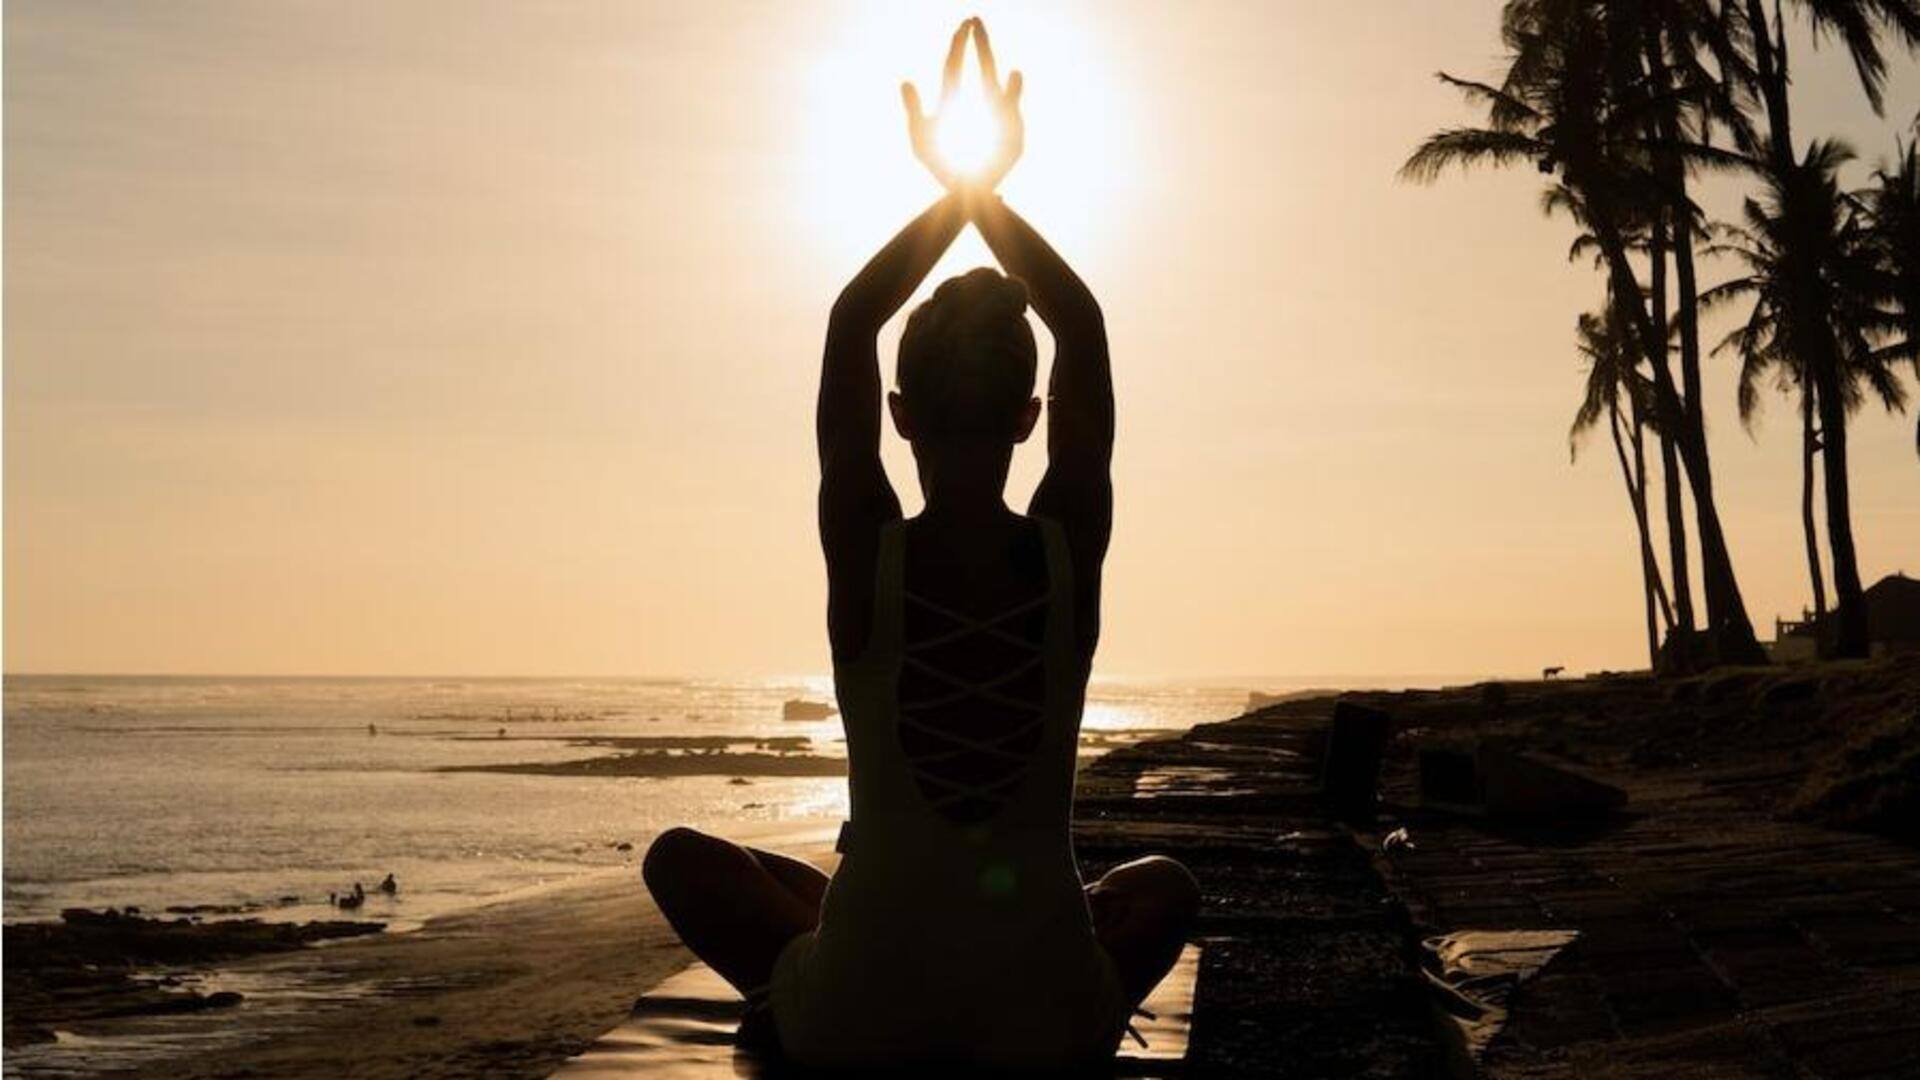 मांसपेशियों को मजबूती देने में मदद कर सकते हैं ये 5 योगासन, ऐसे करें अभ्यास